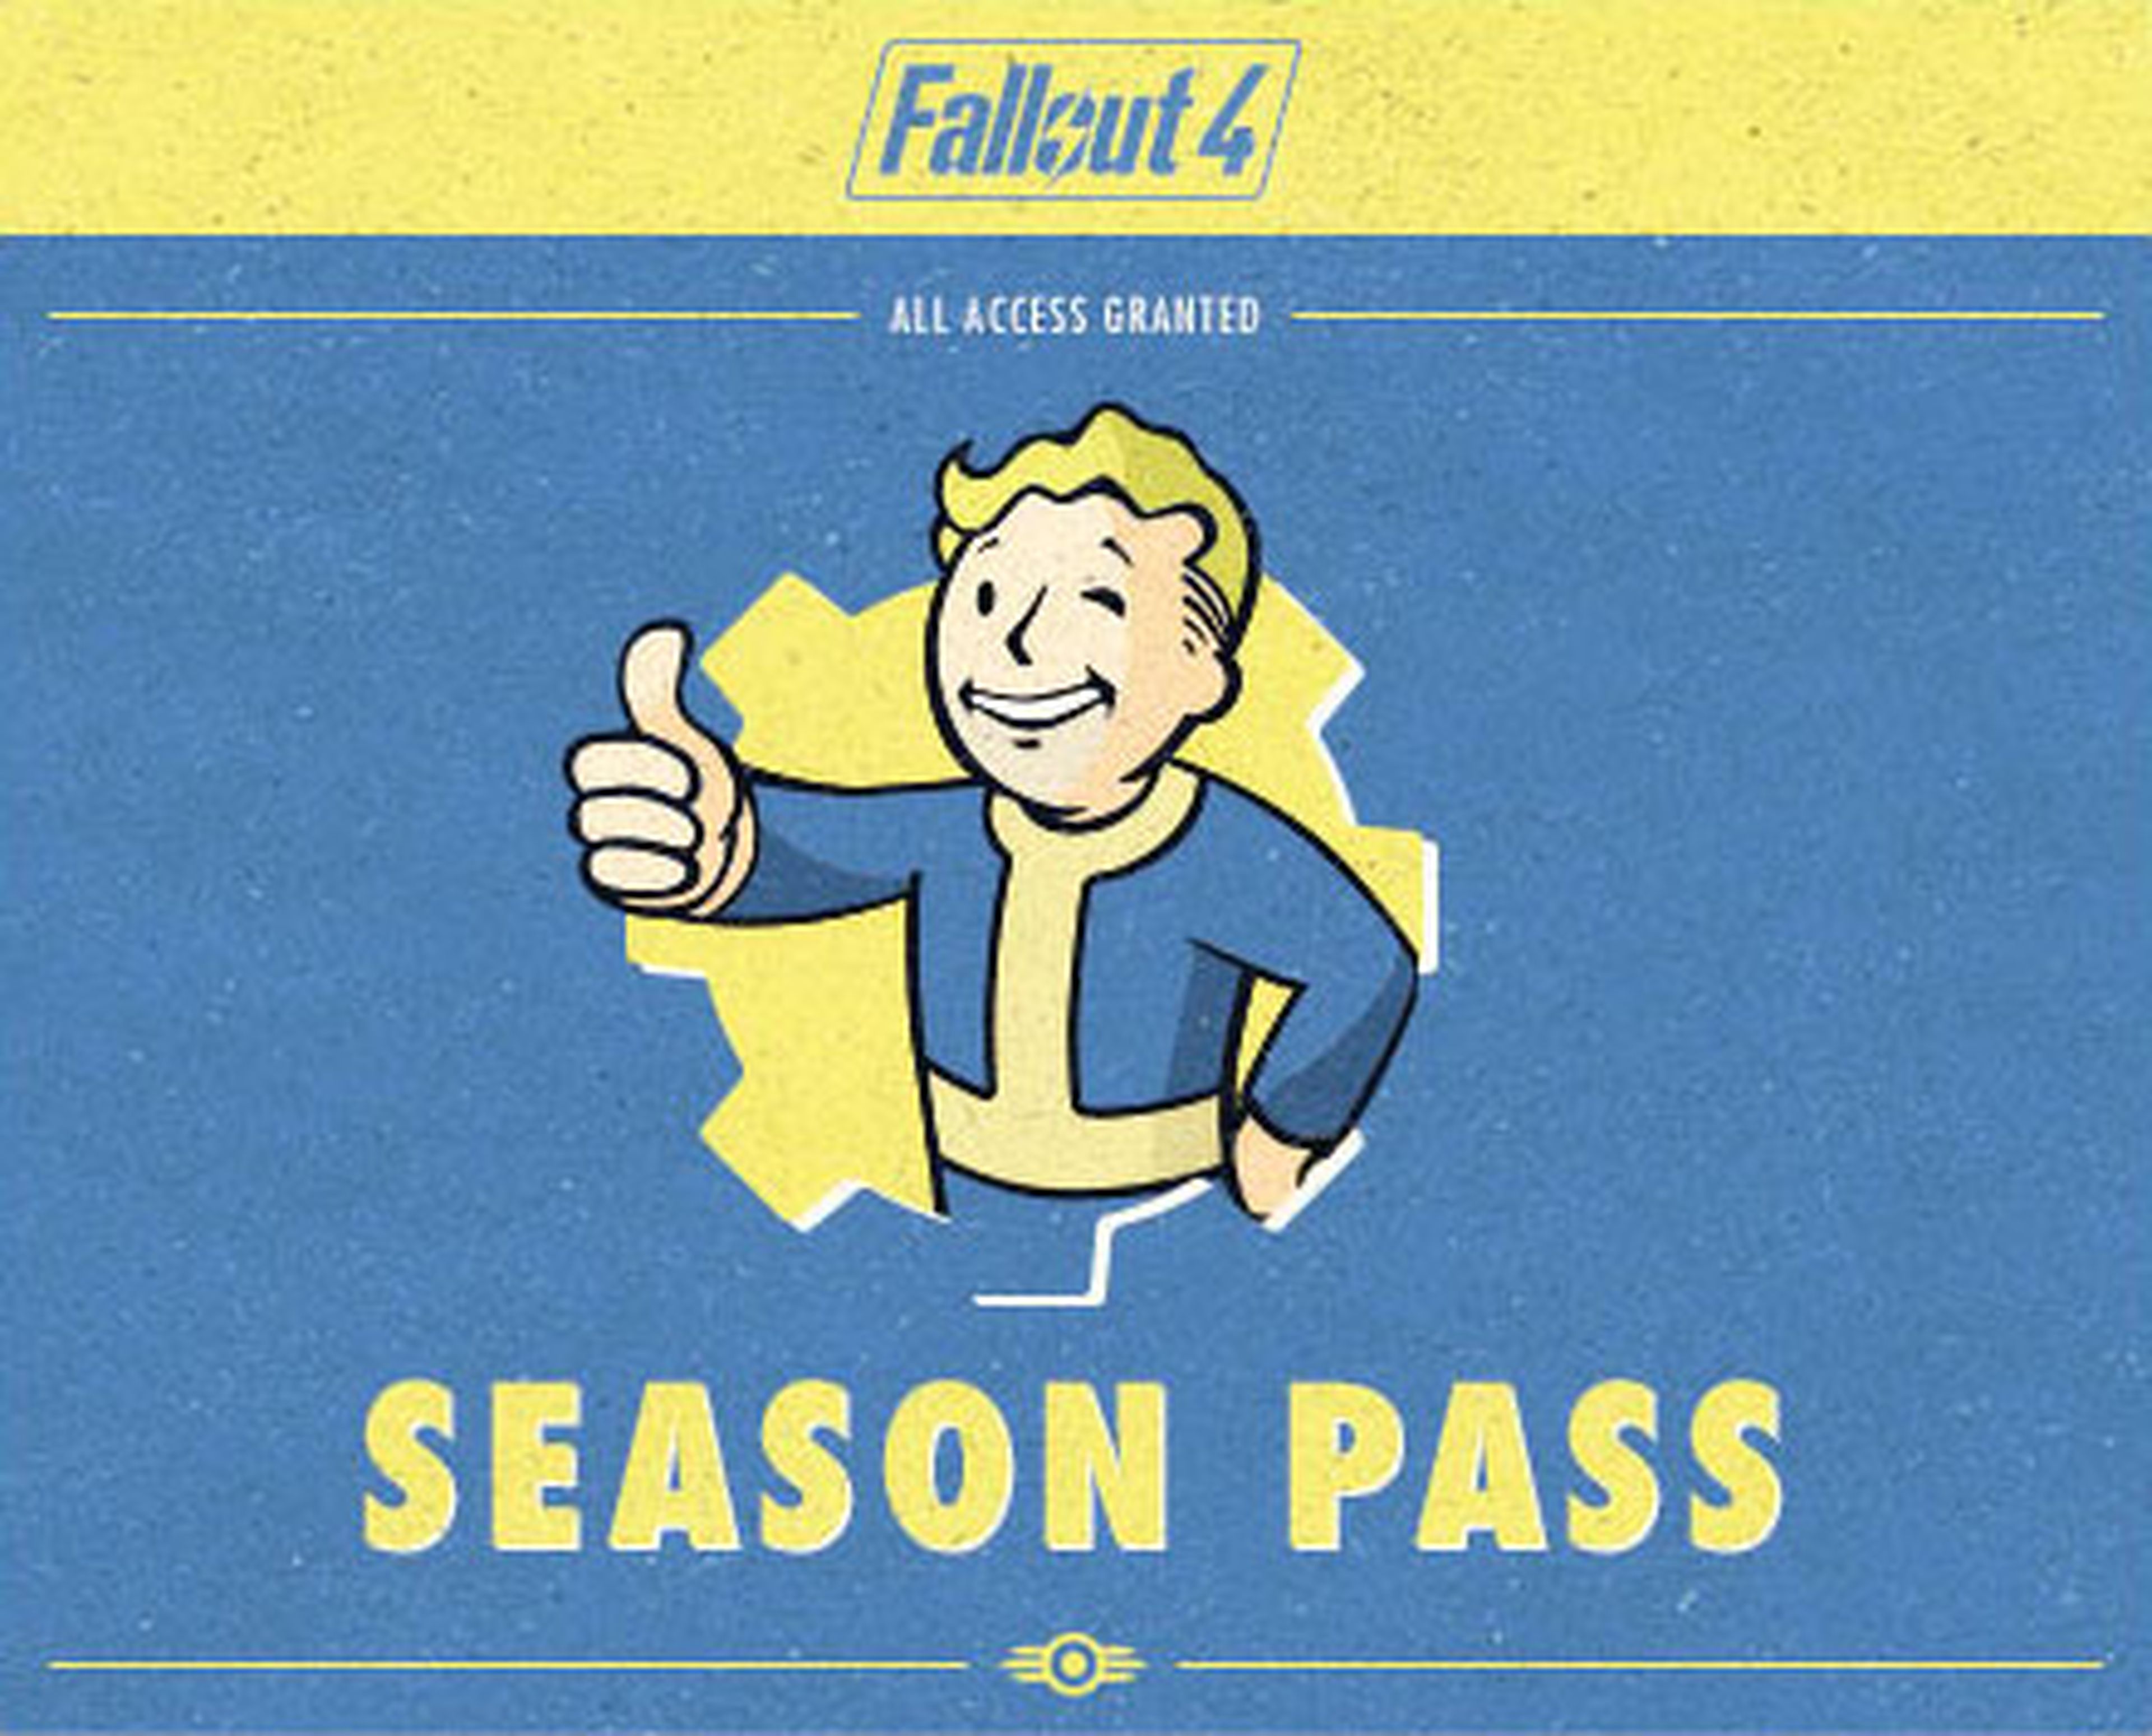 Fallout 4 tendrá pase de temporada y actualizaciones frecuentes